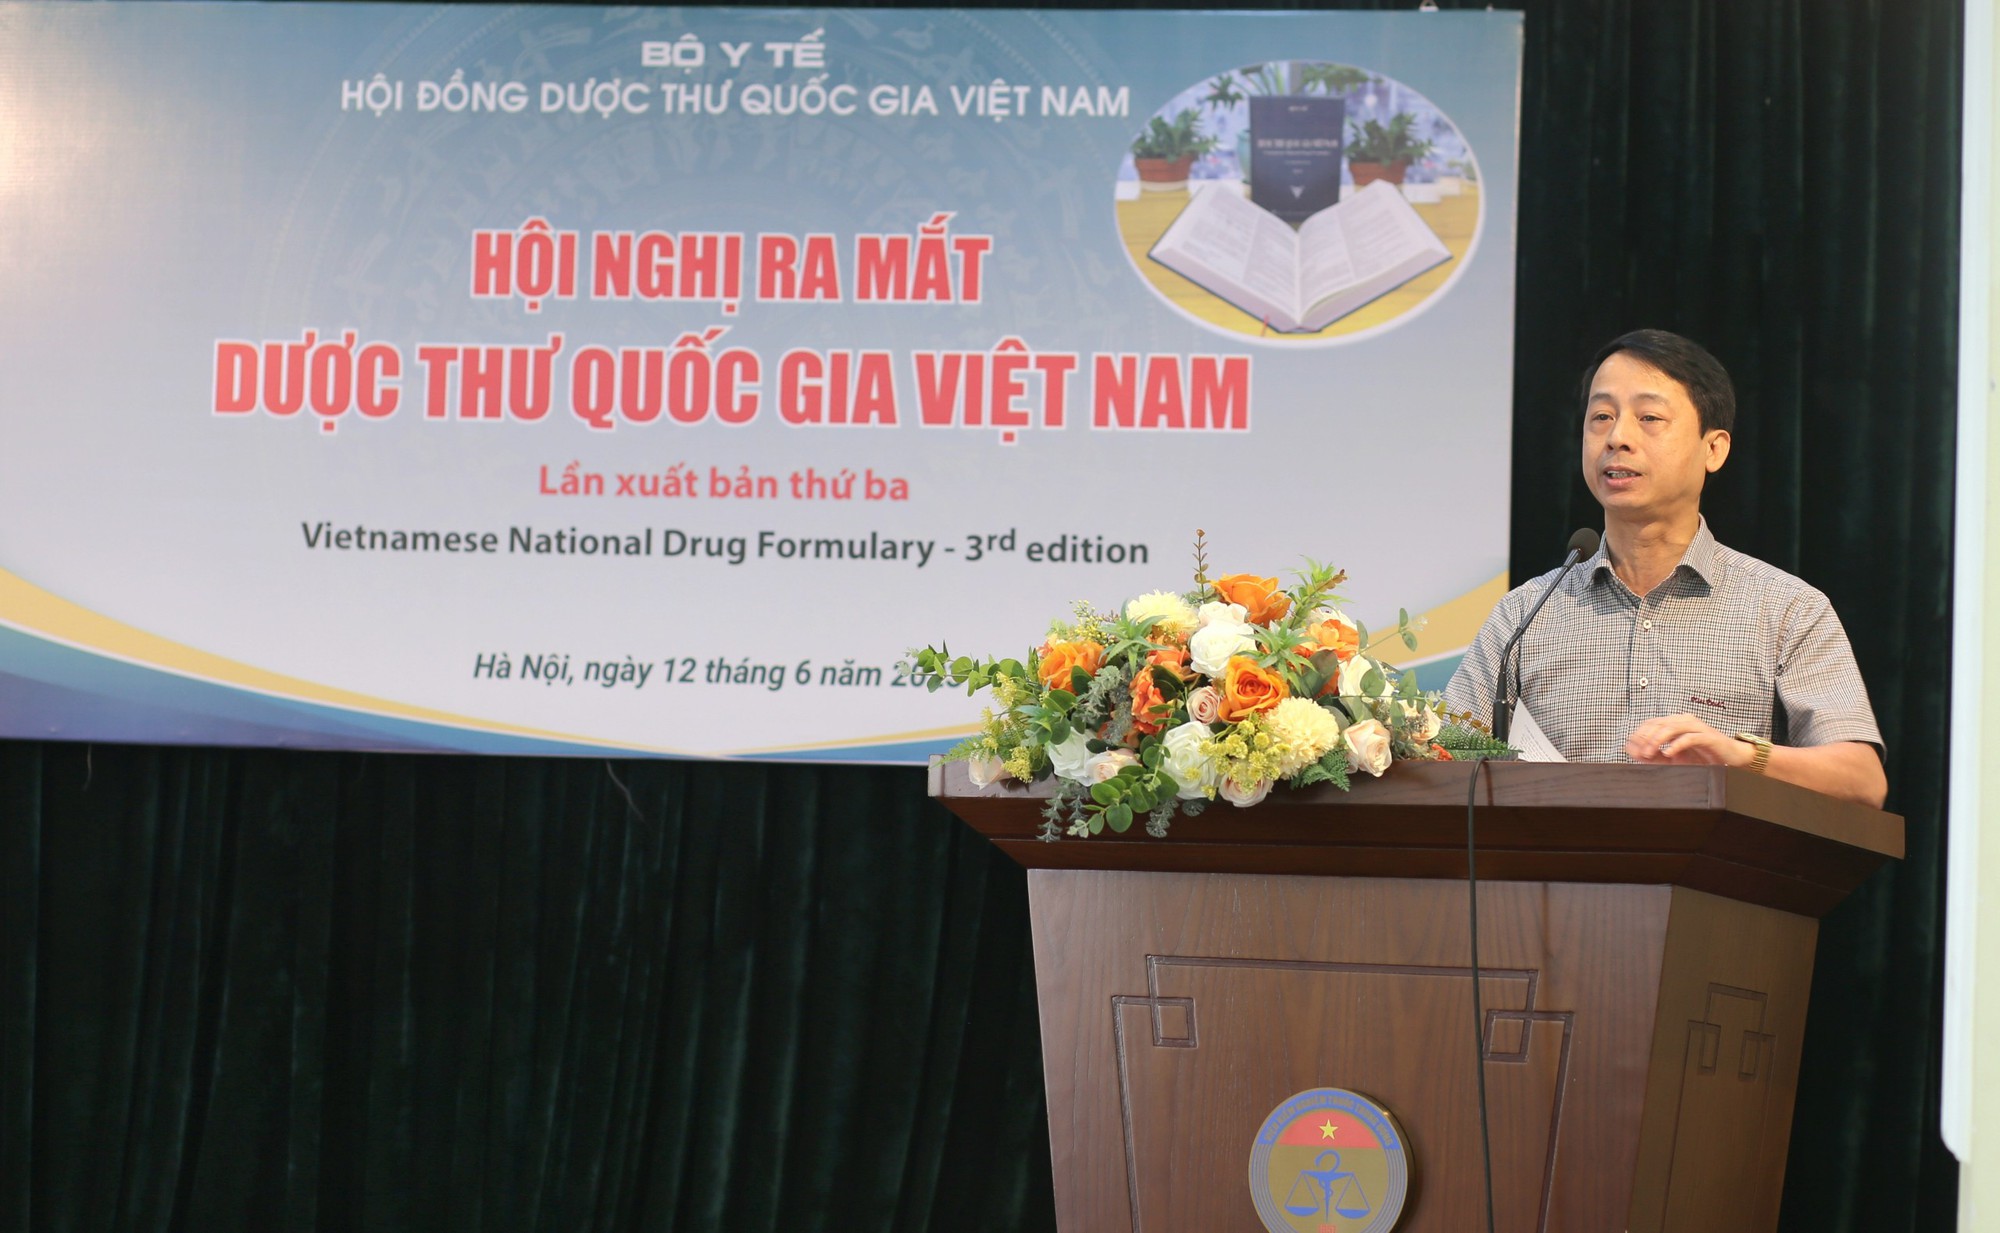 Ra mắt Dược thư Quốc gia Việt Nam lần xuất bản thứ ba - Ảnh 3.